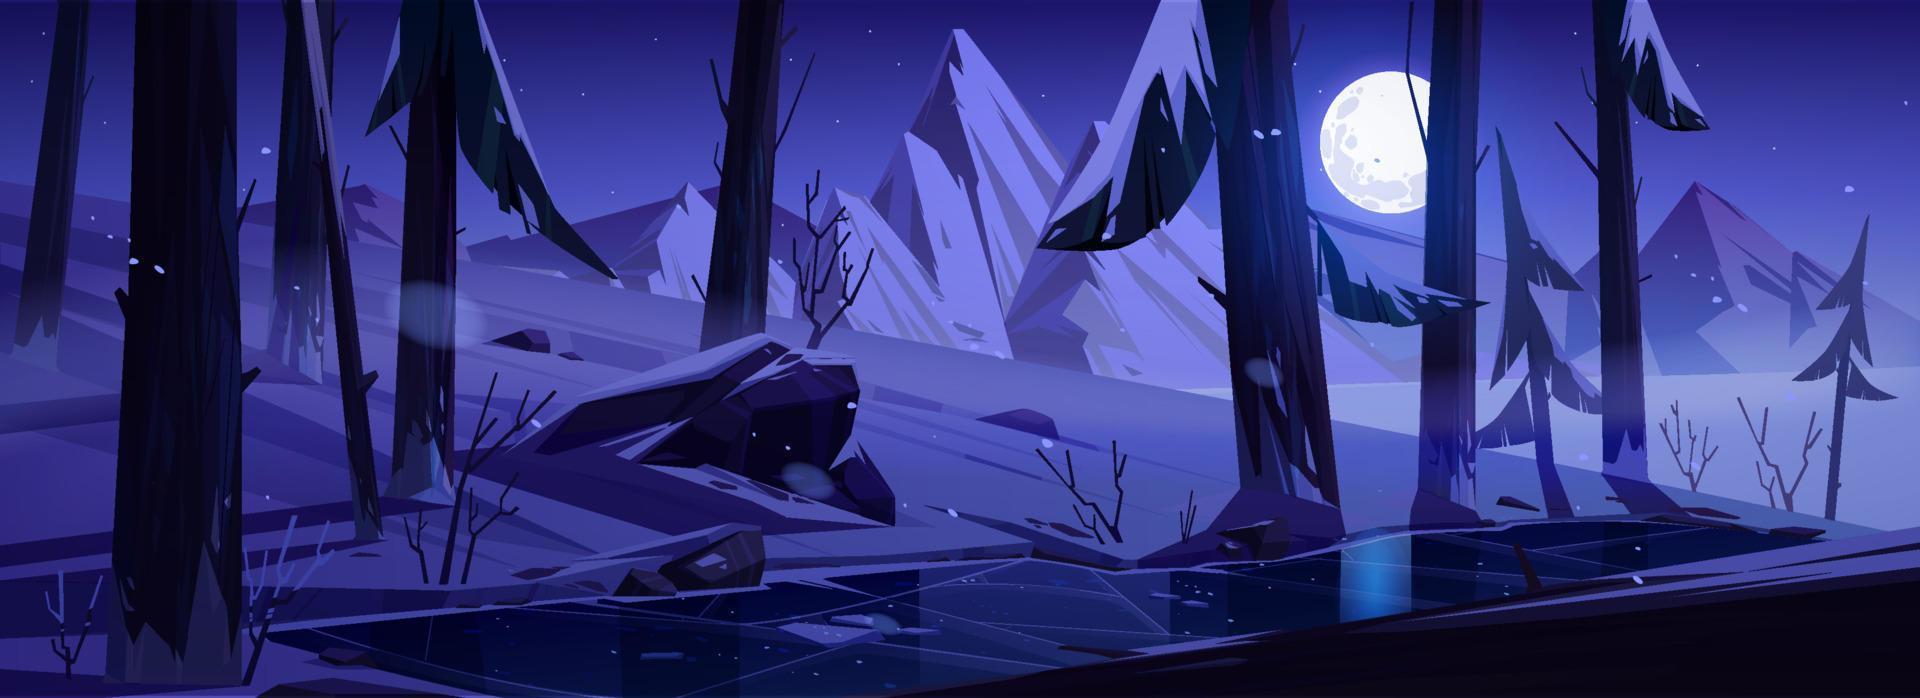 winter nacht landschap met bergen en Woud vector